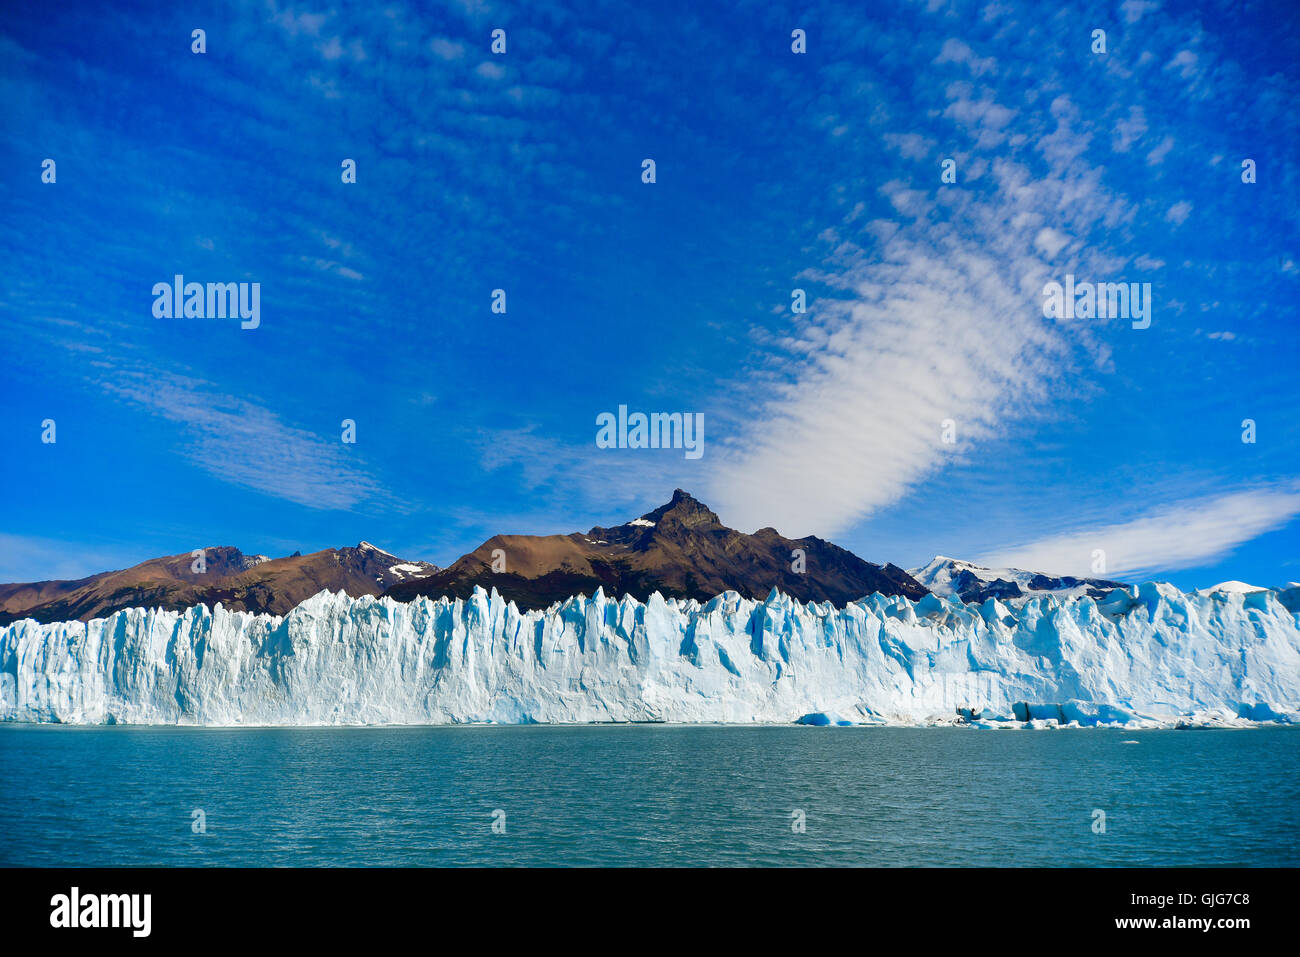 Parco nazionale Los Glaciares, Argentina - Mar 21, 2016: giorno vista dall'acqua presso il ghiacciaio Perito Moreno in parte anteriore del moun Foto Stock